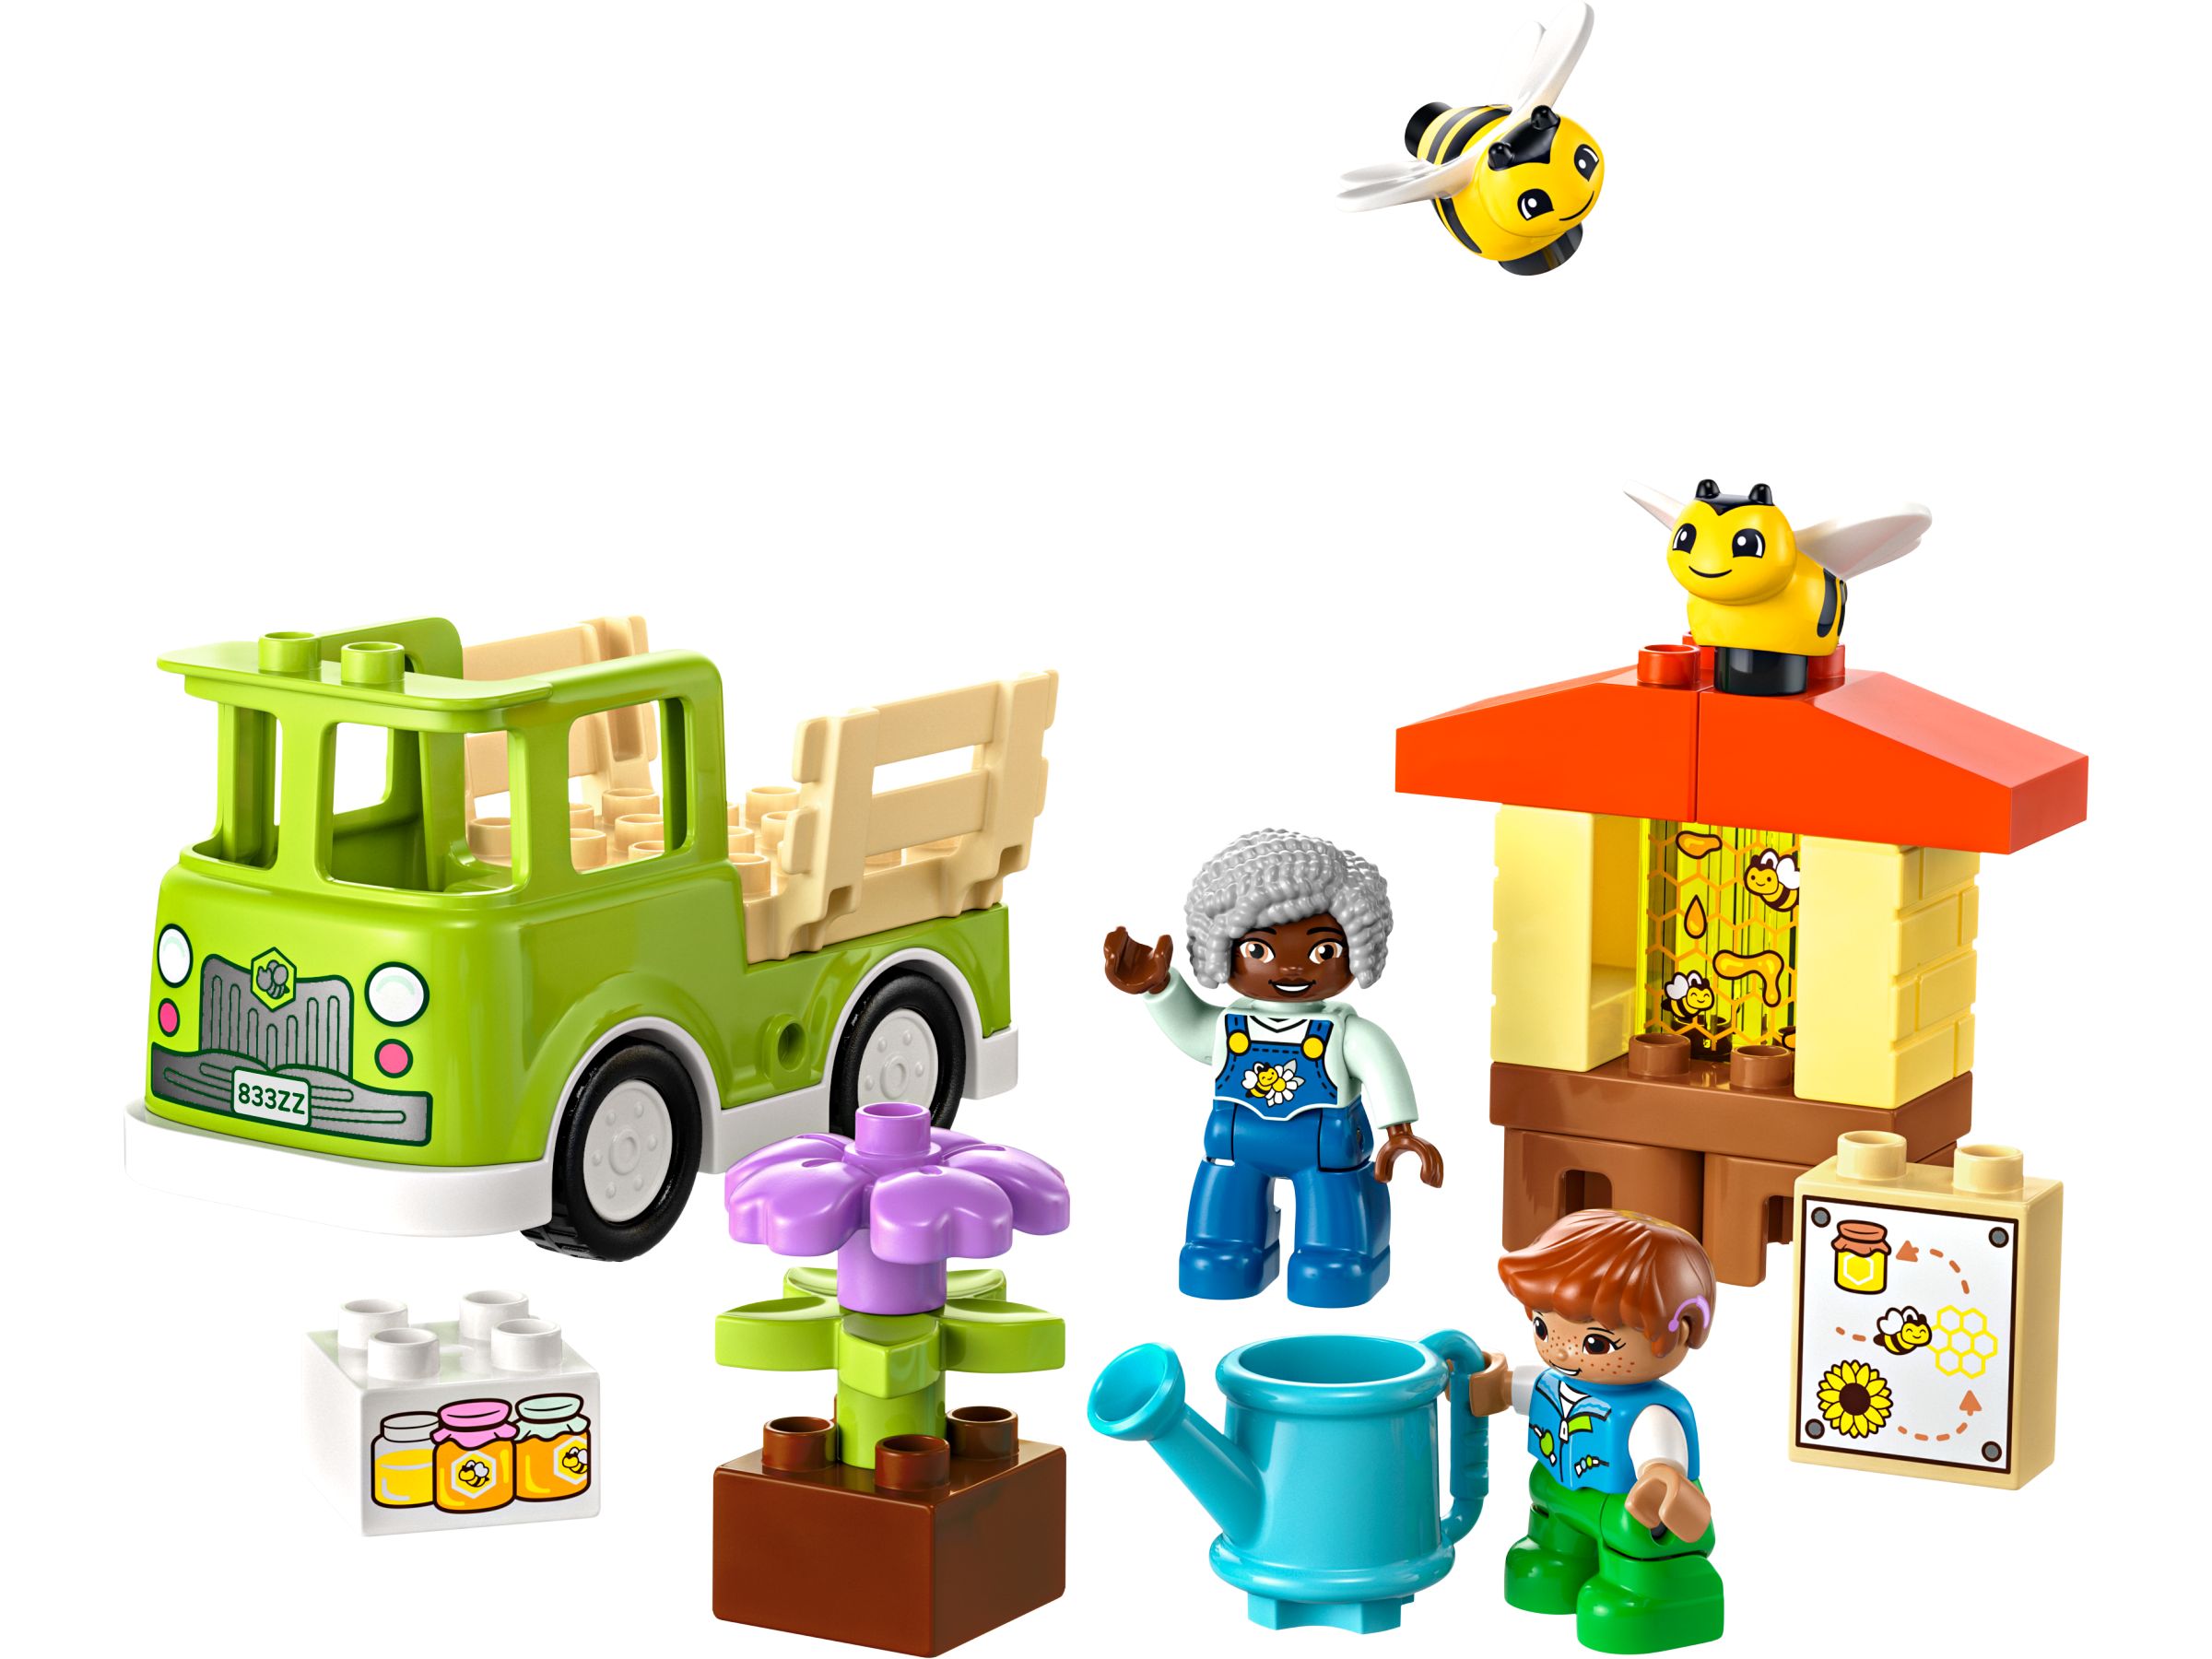 LEGO Duplo 10419 Imkerei und Bienenstöcke